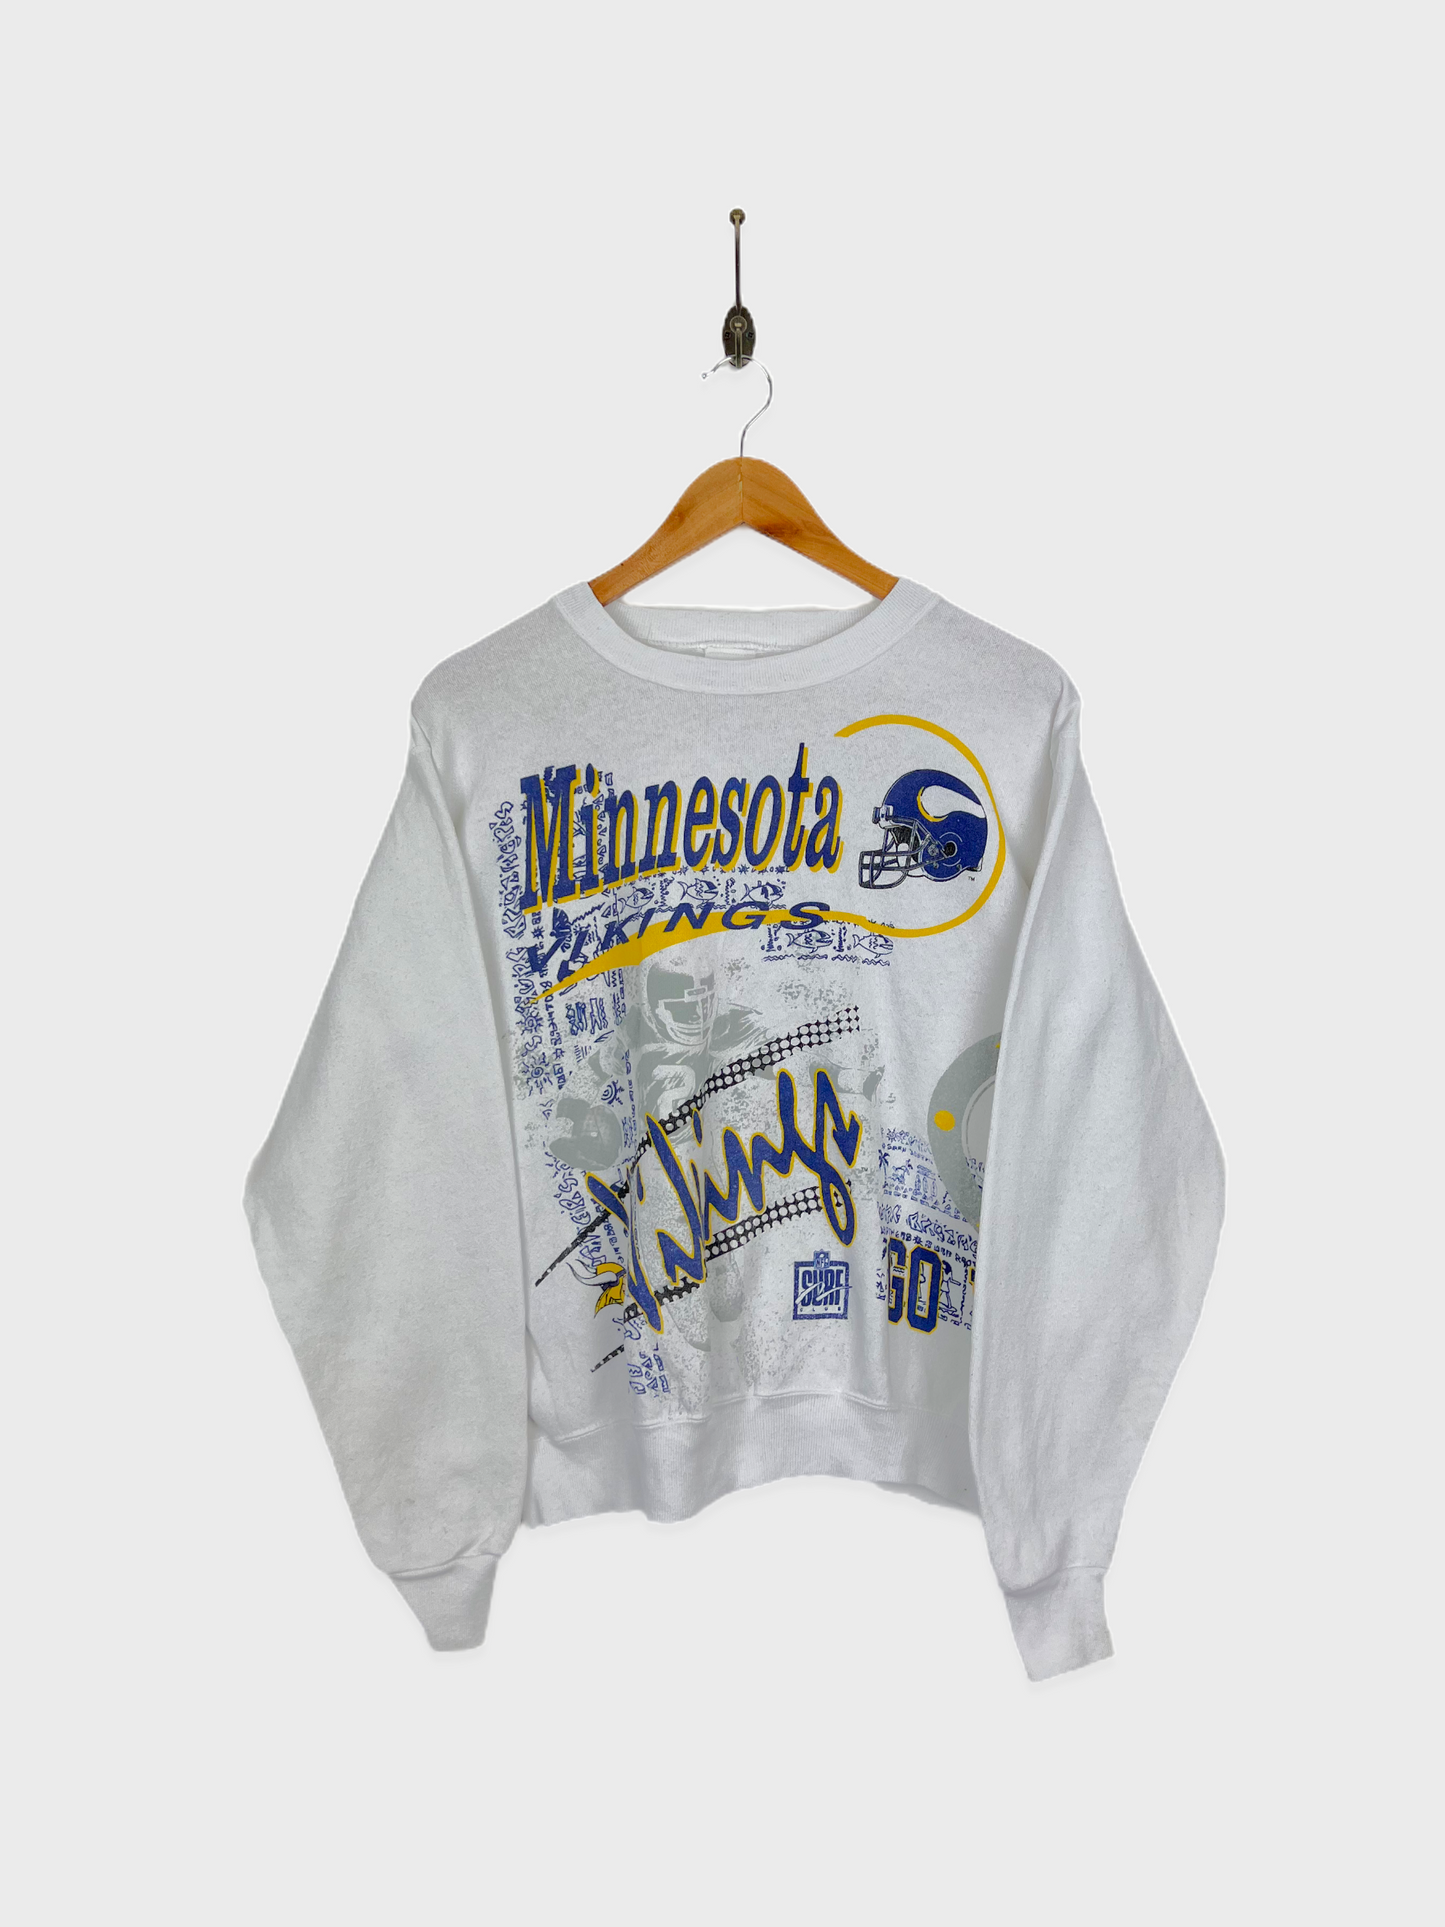 90's Minnesota Vikings NFL USA Made Vintage Sweatshirt Size 6